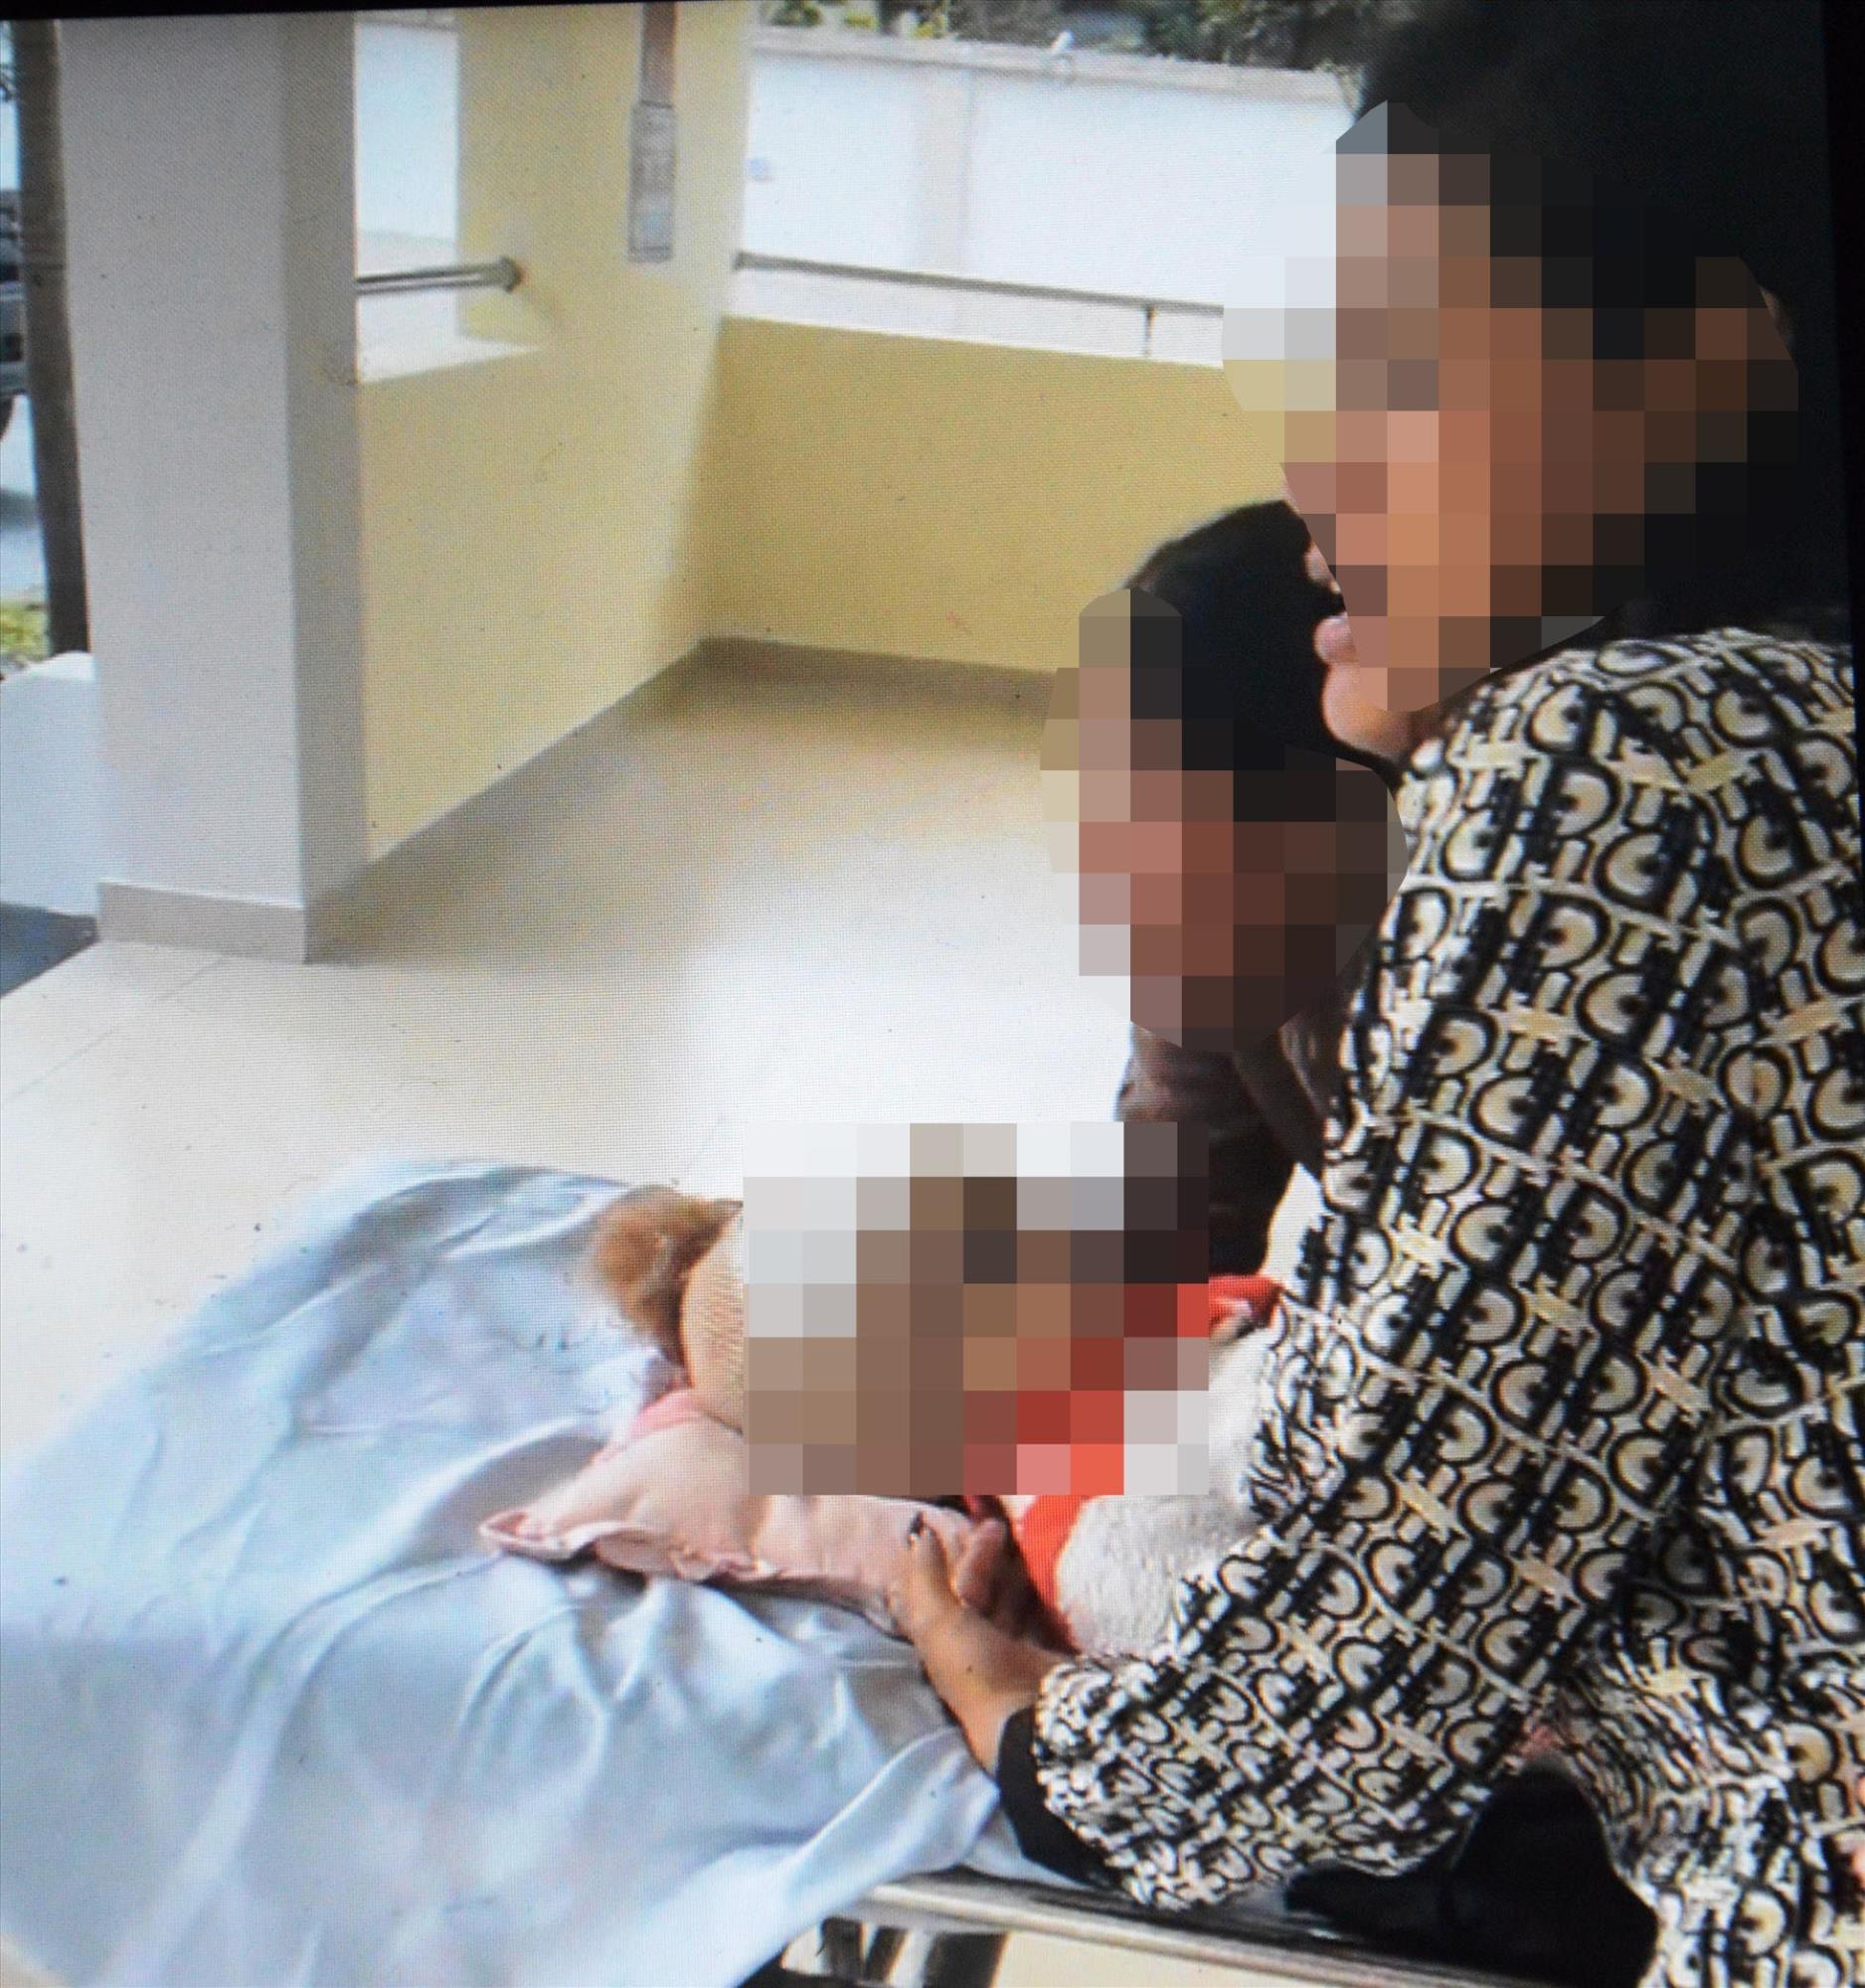 Quảng Ngãi: Bé trai 3 tuổi hóc hạt bí tử vong, người nhà tố bệnh viện tắc trách  - Ảnh 2